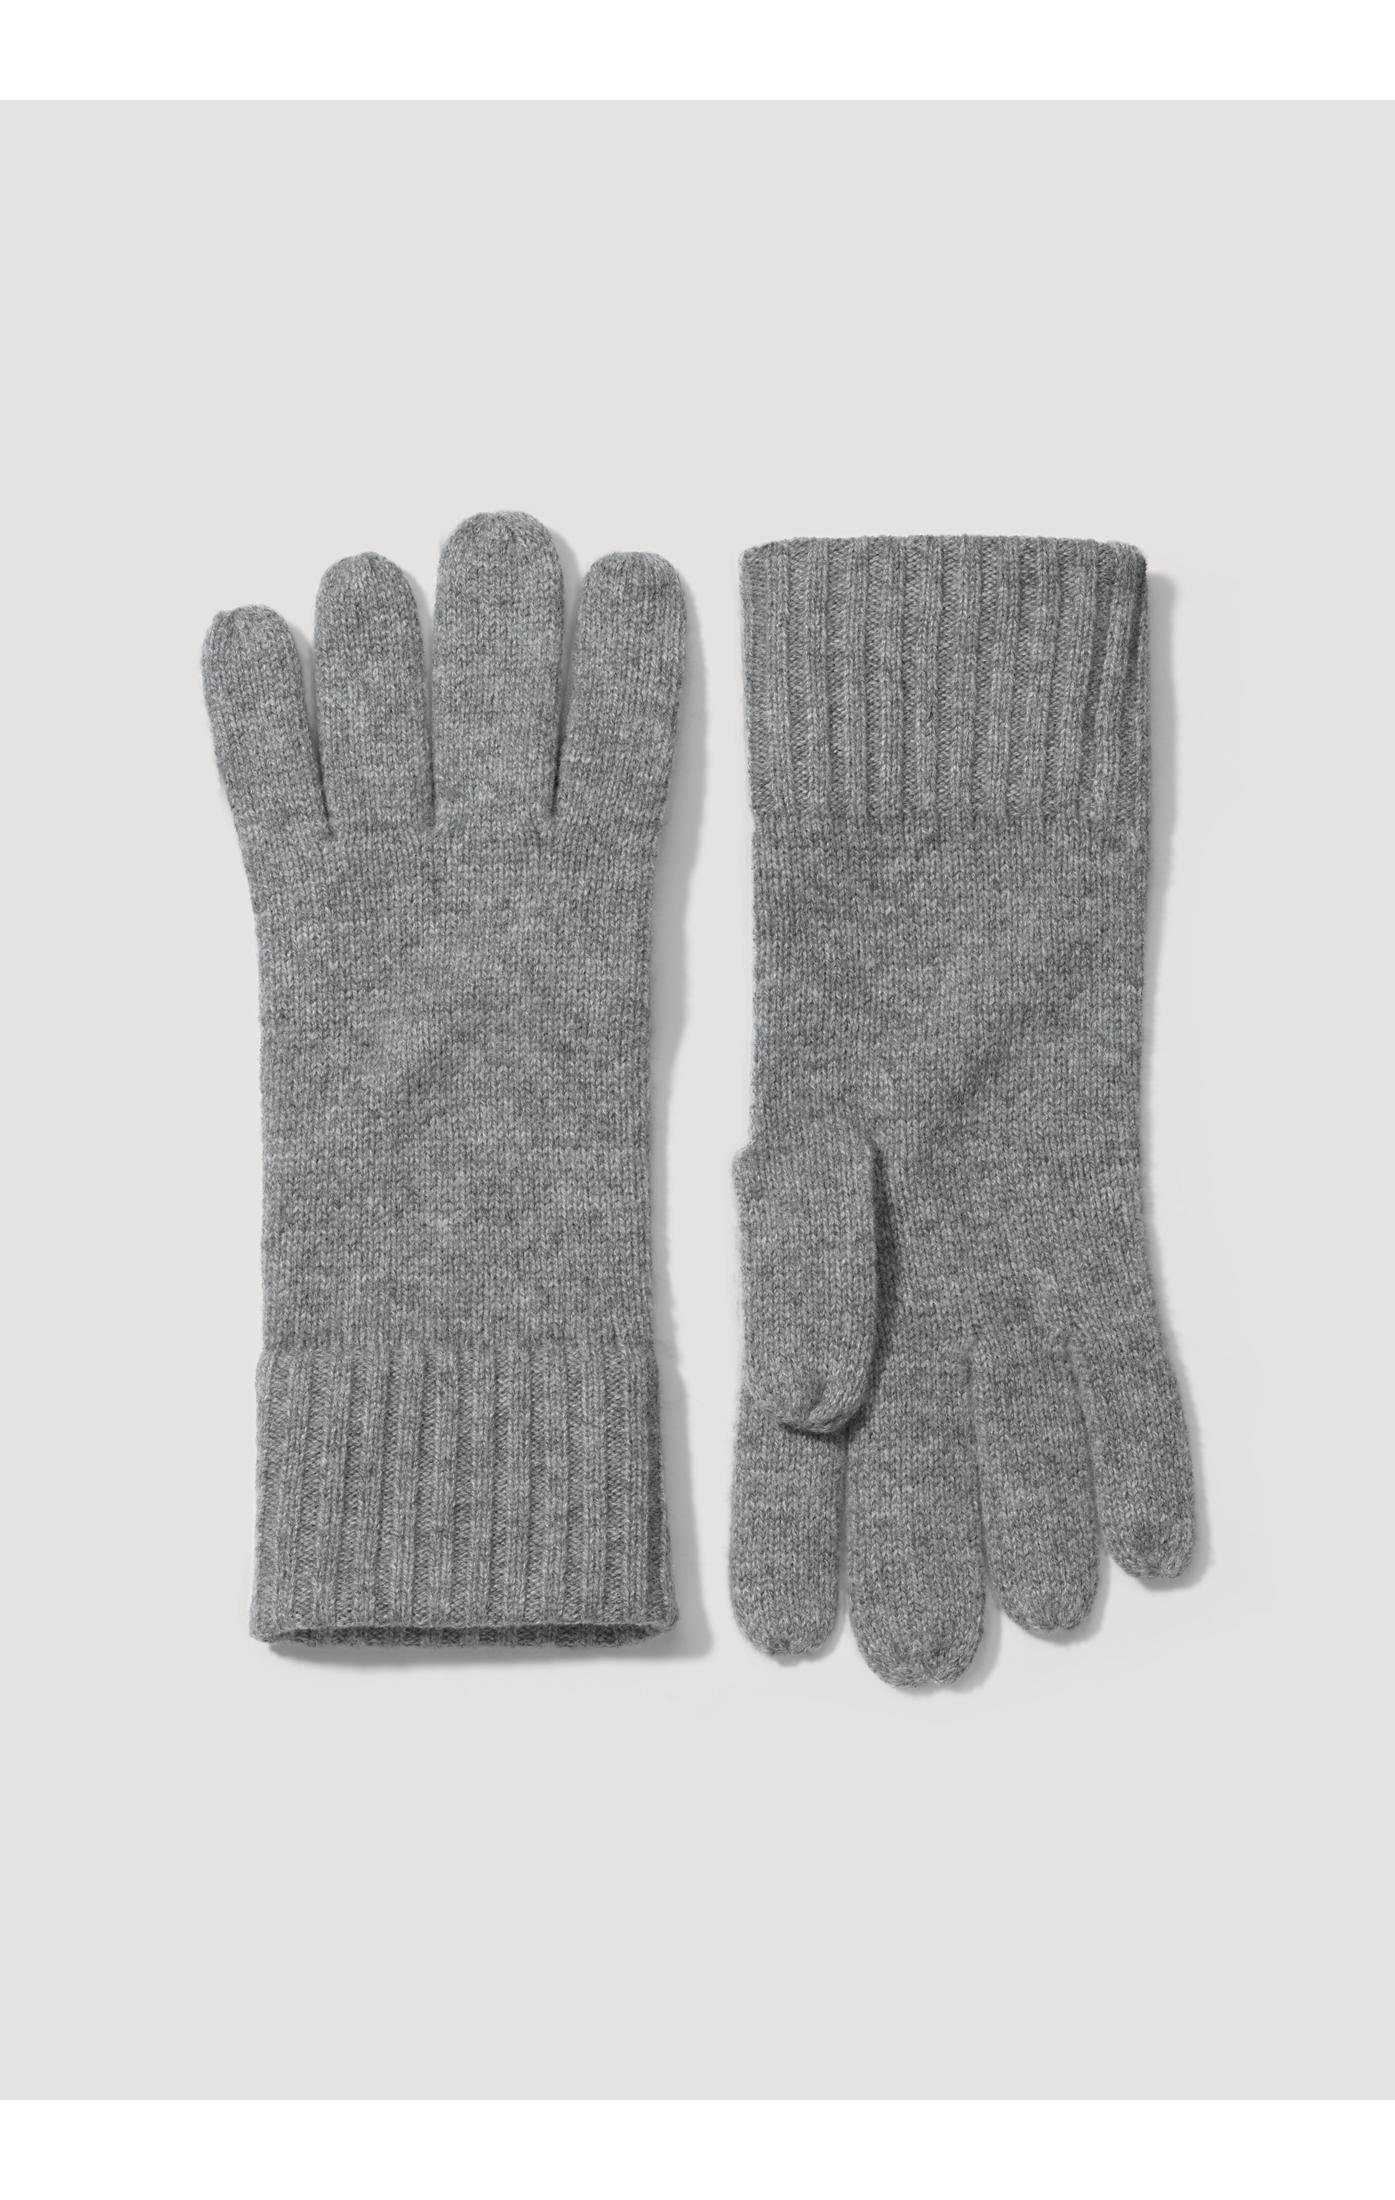 Hessnatur Strickhandschuhe grau Fingerhandschuhe mit Kaschmir Schurwolle aus